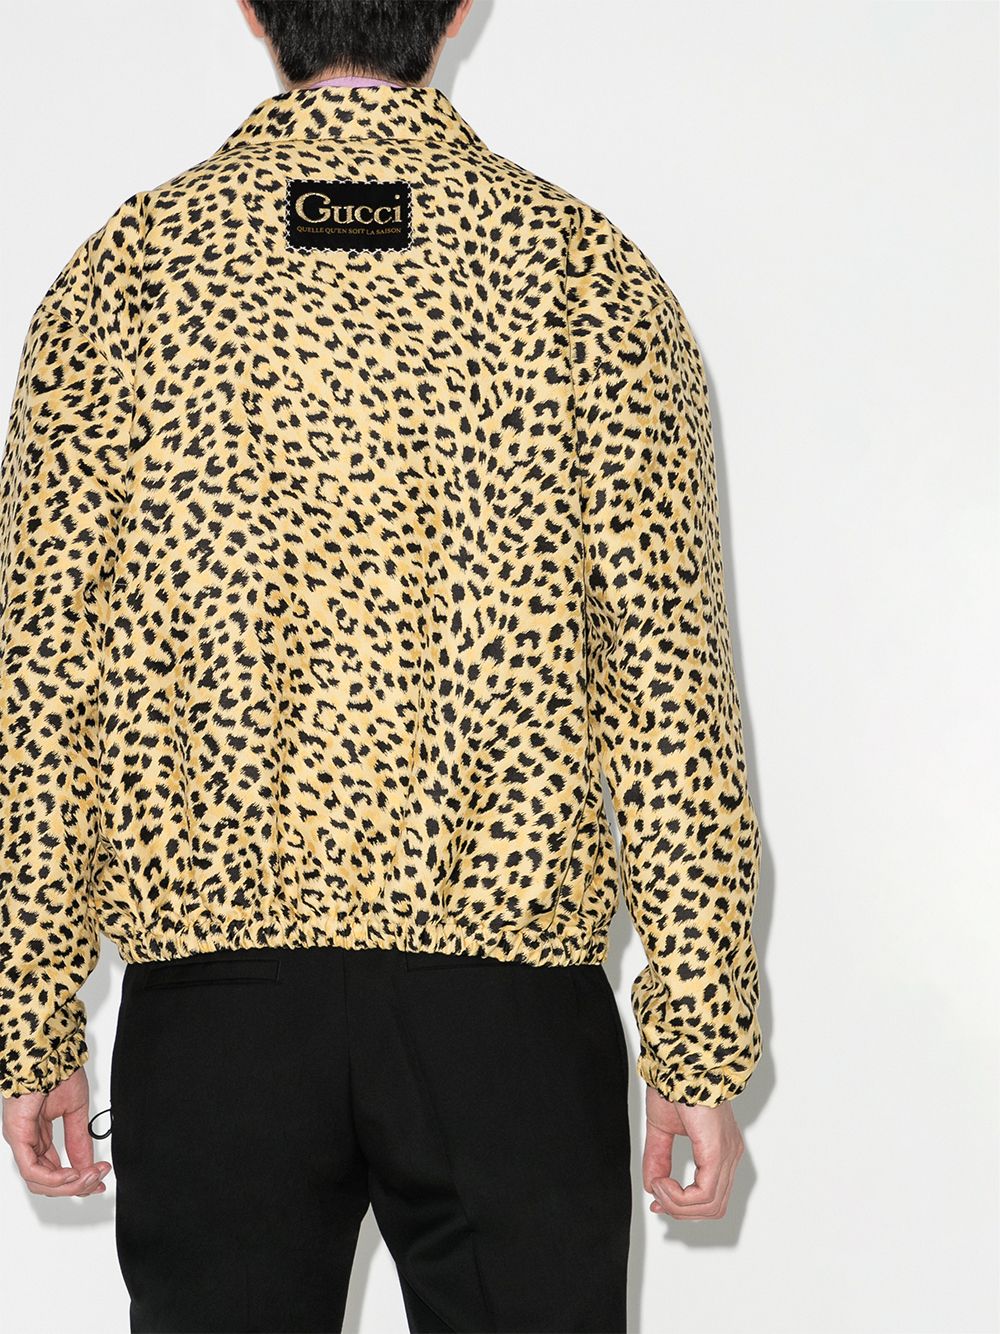 фото Gucci бомбер с леопардовым принтом